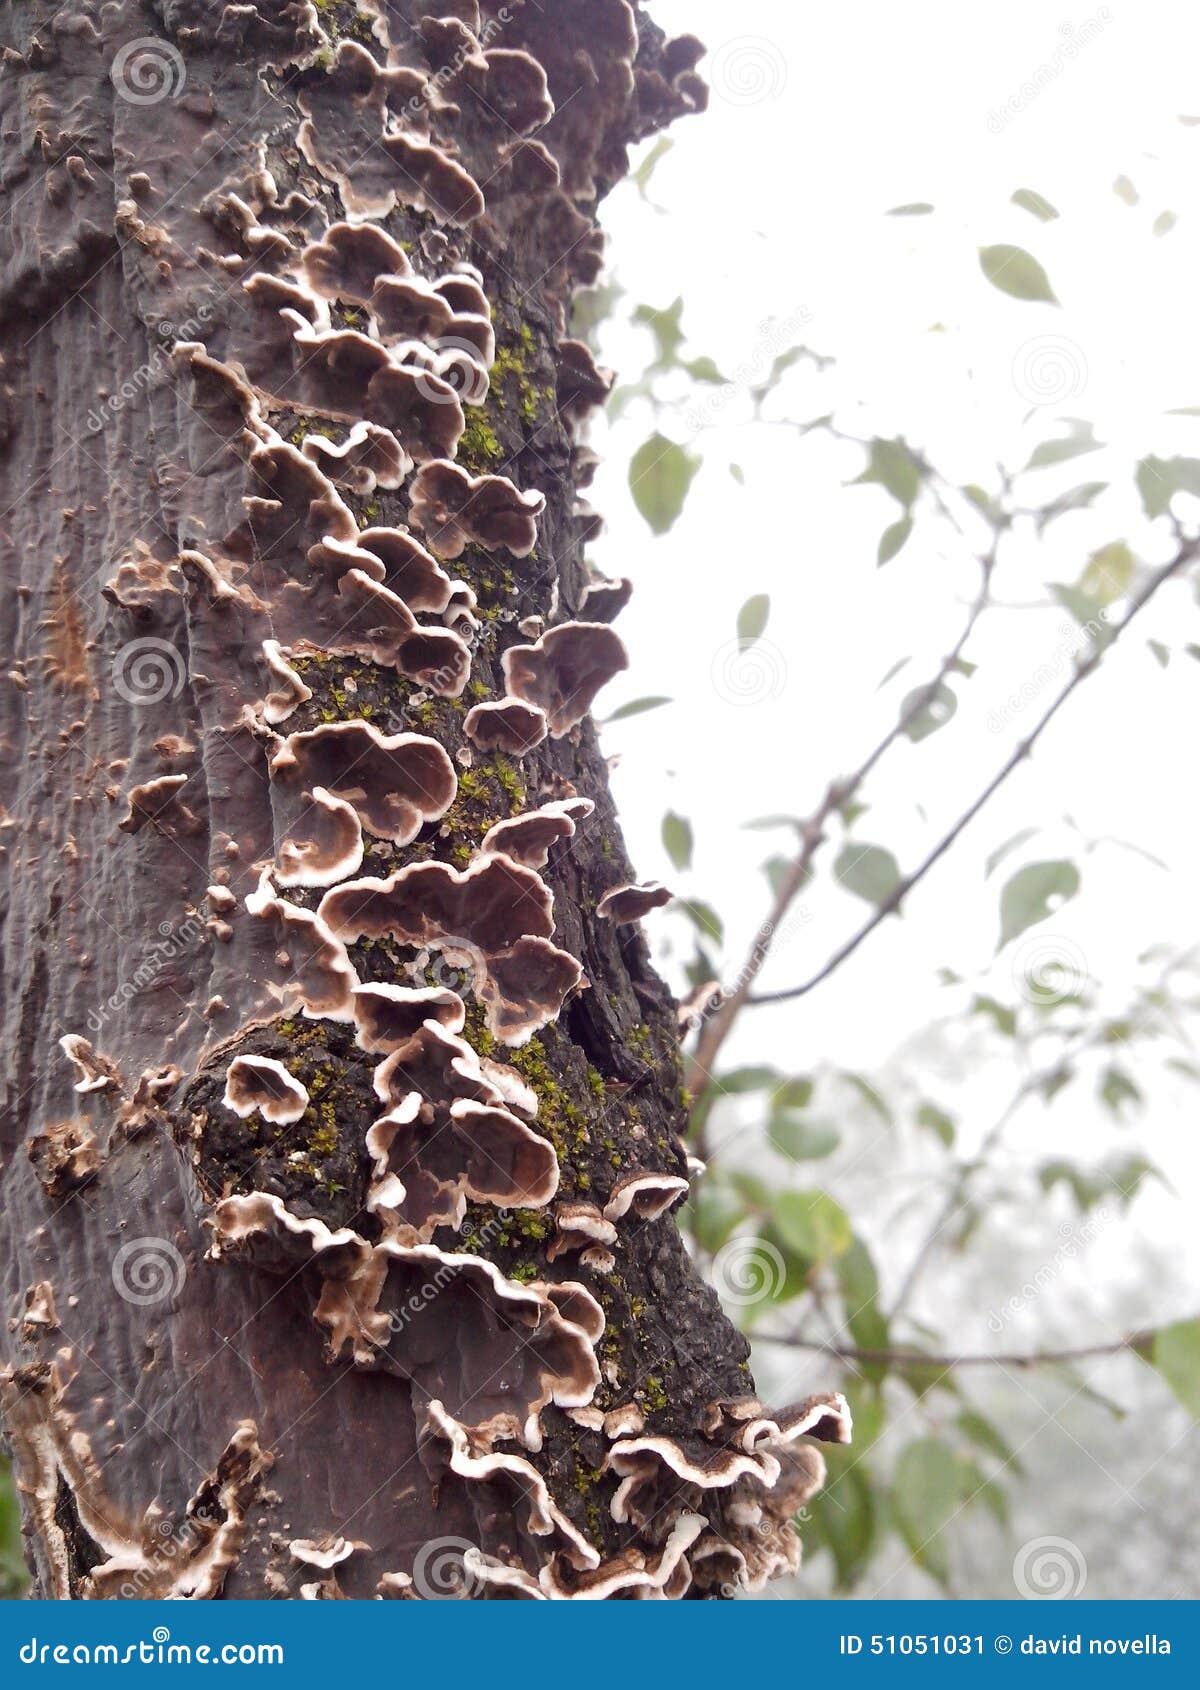 mushrooms on a live tree